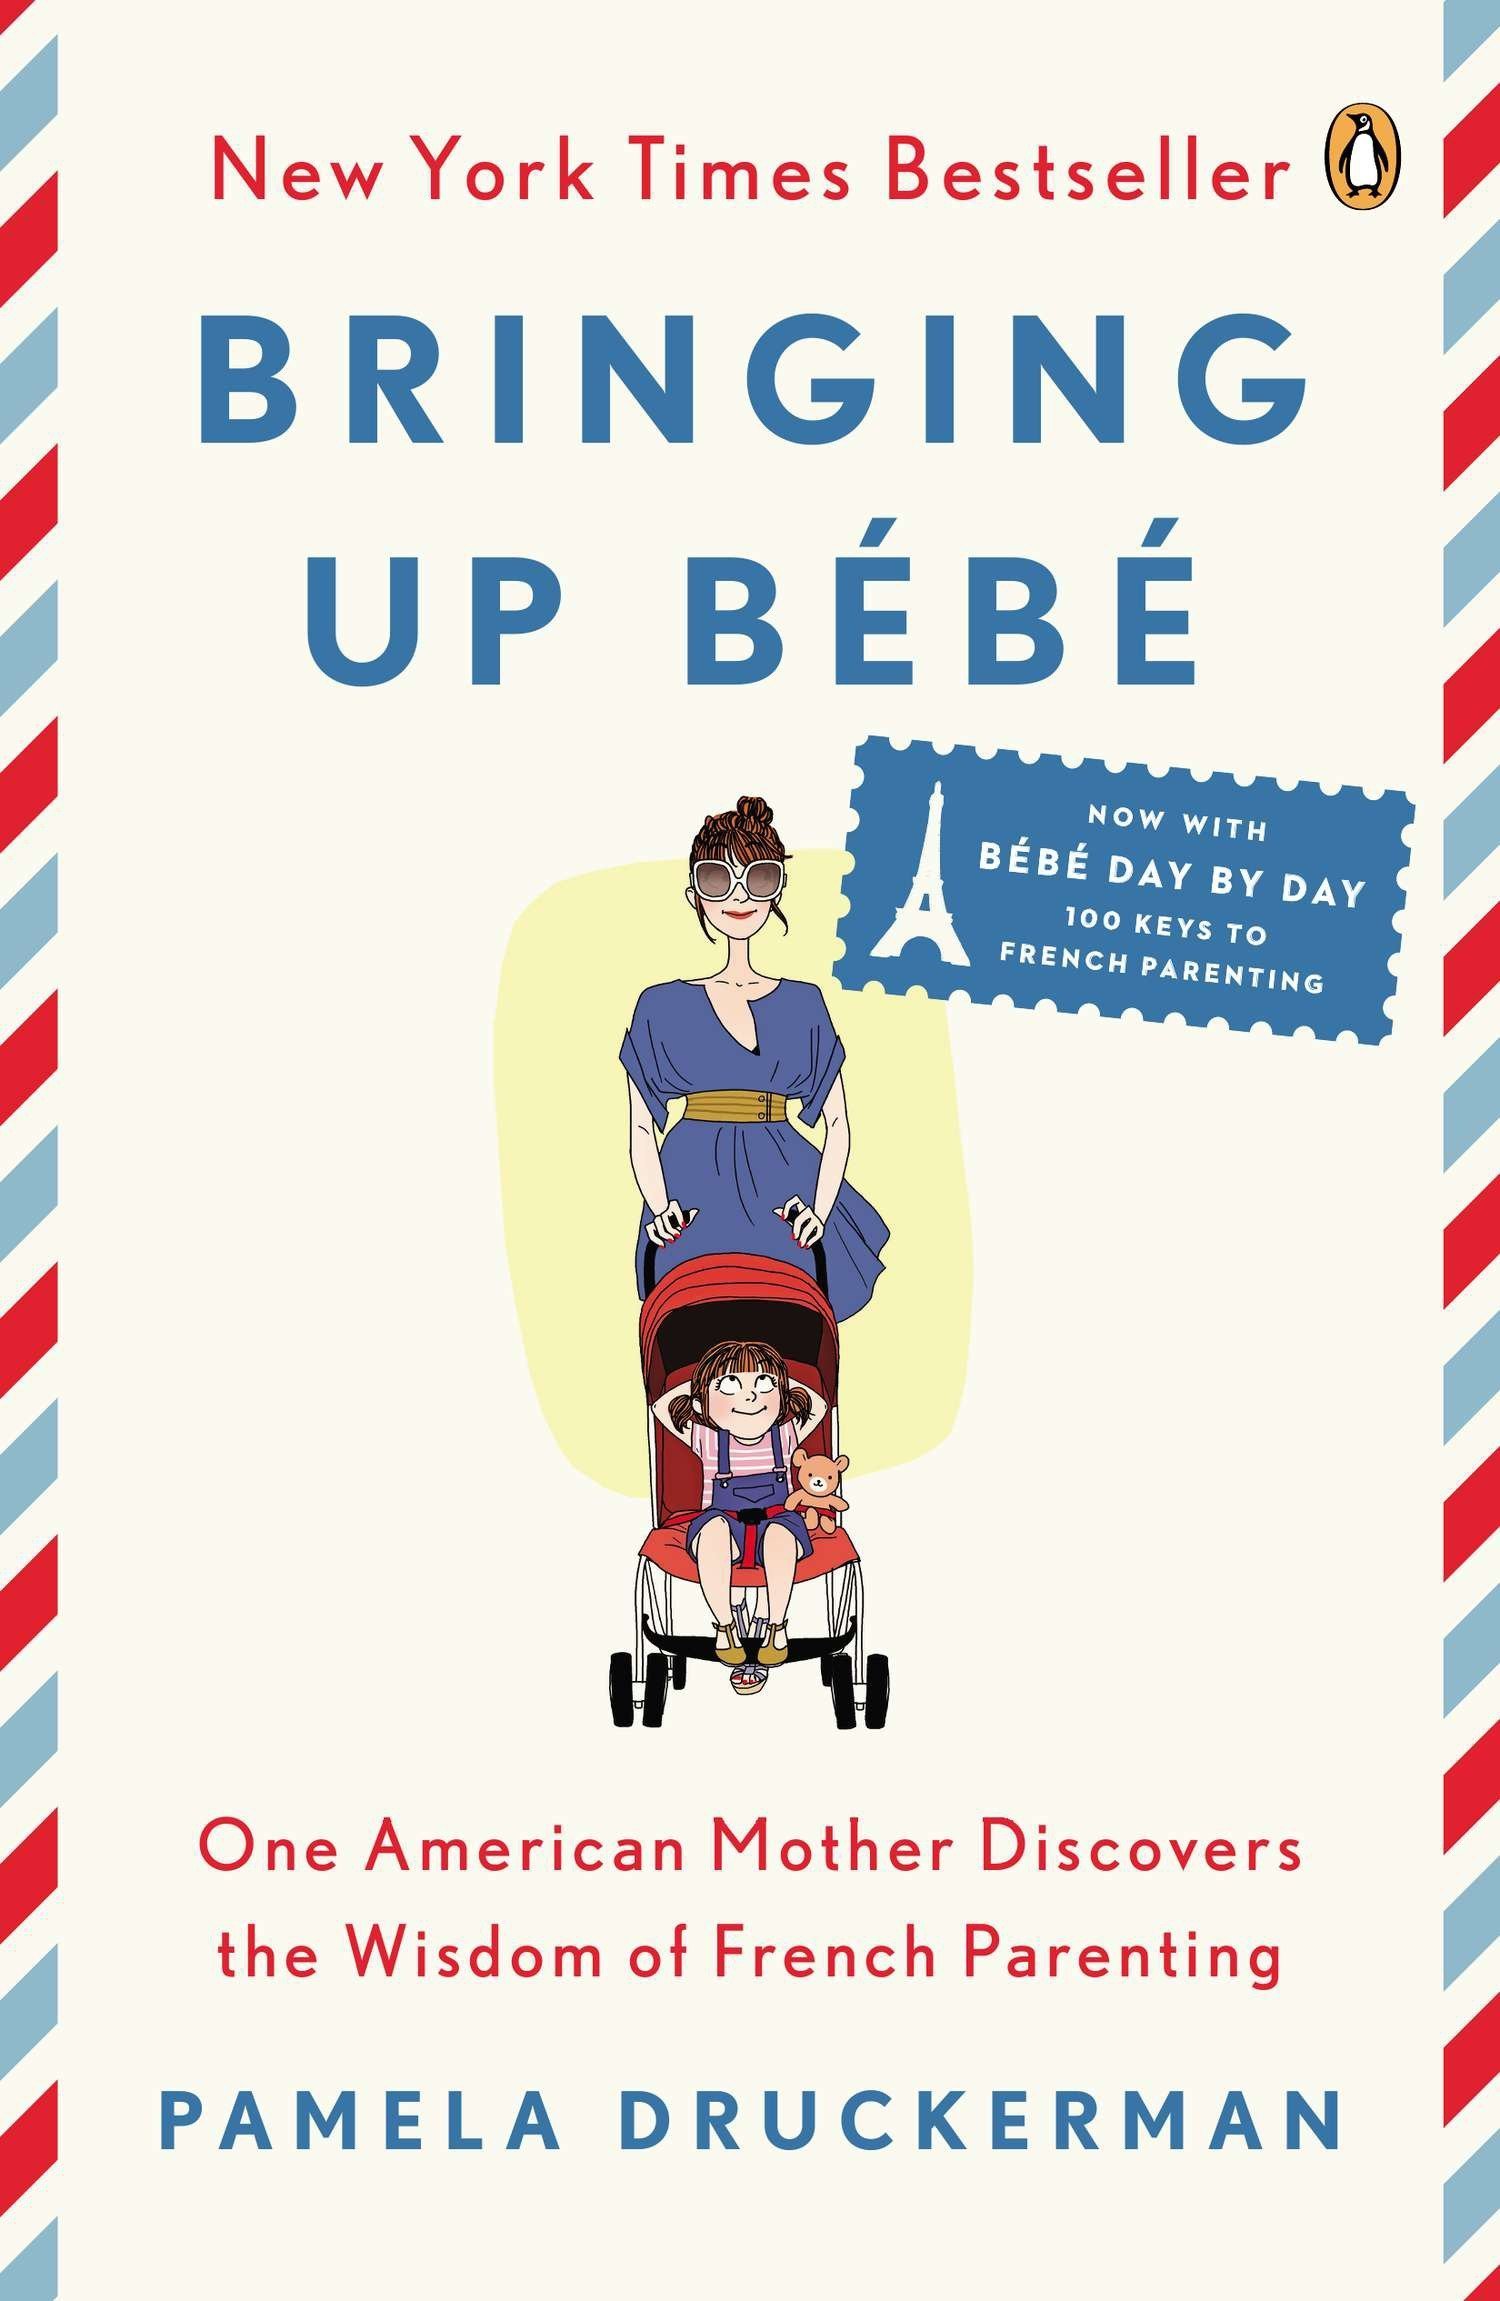 "Bringing Up Bébé" by Pamela Druckerman